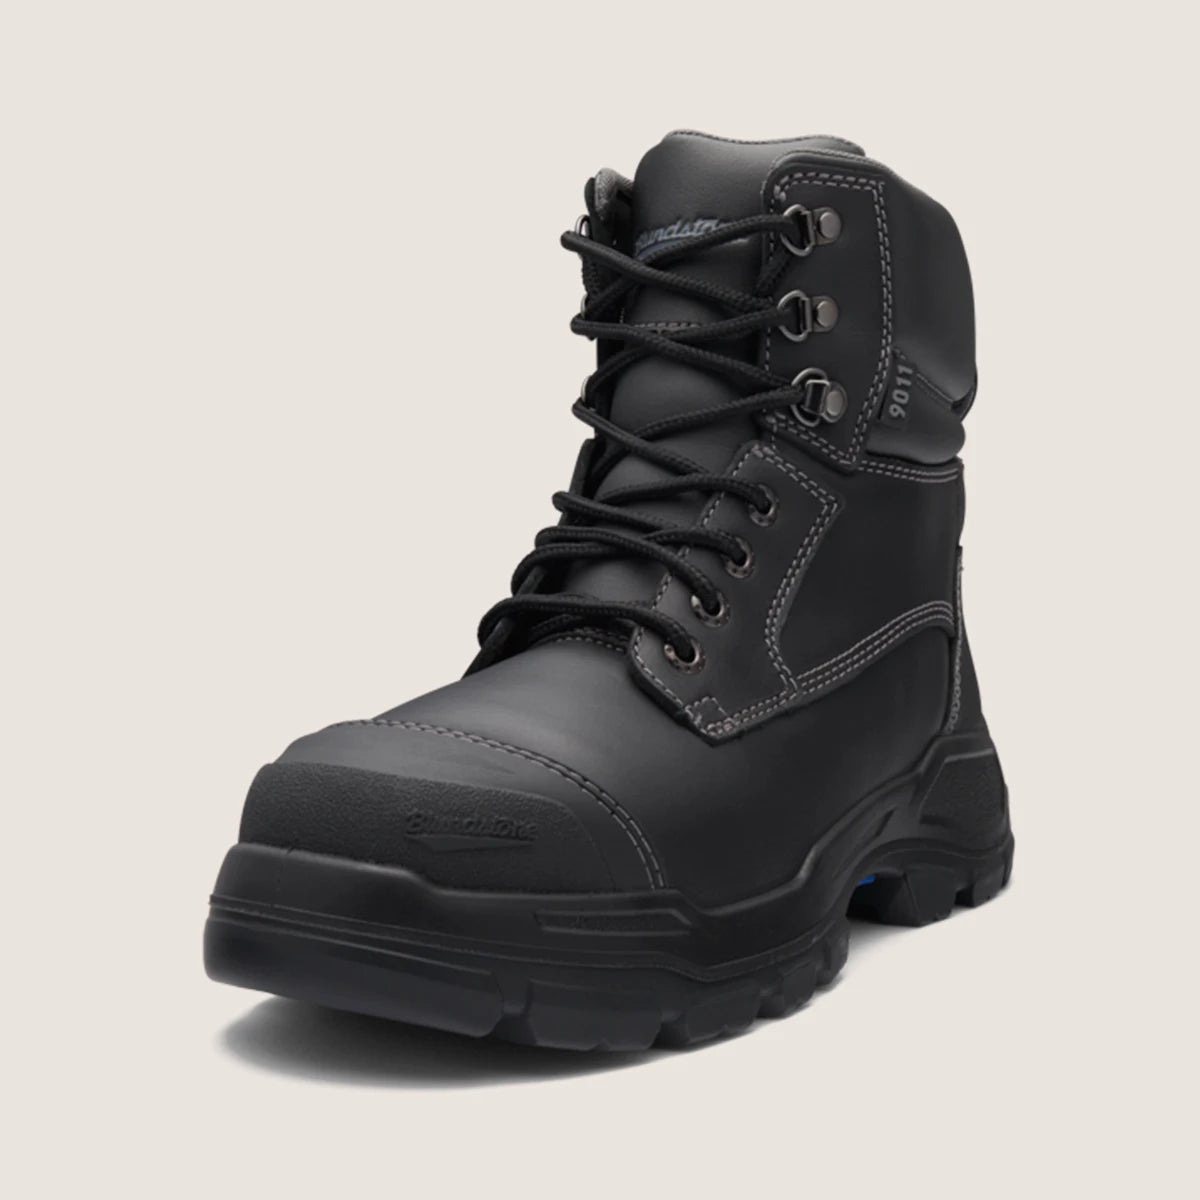 Blundstone 9011 Unisex RotoFlex Safety Boots - Black